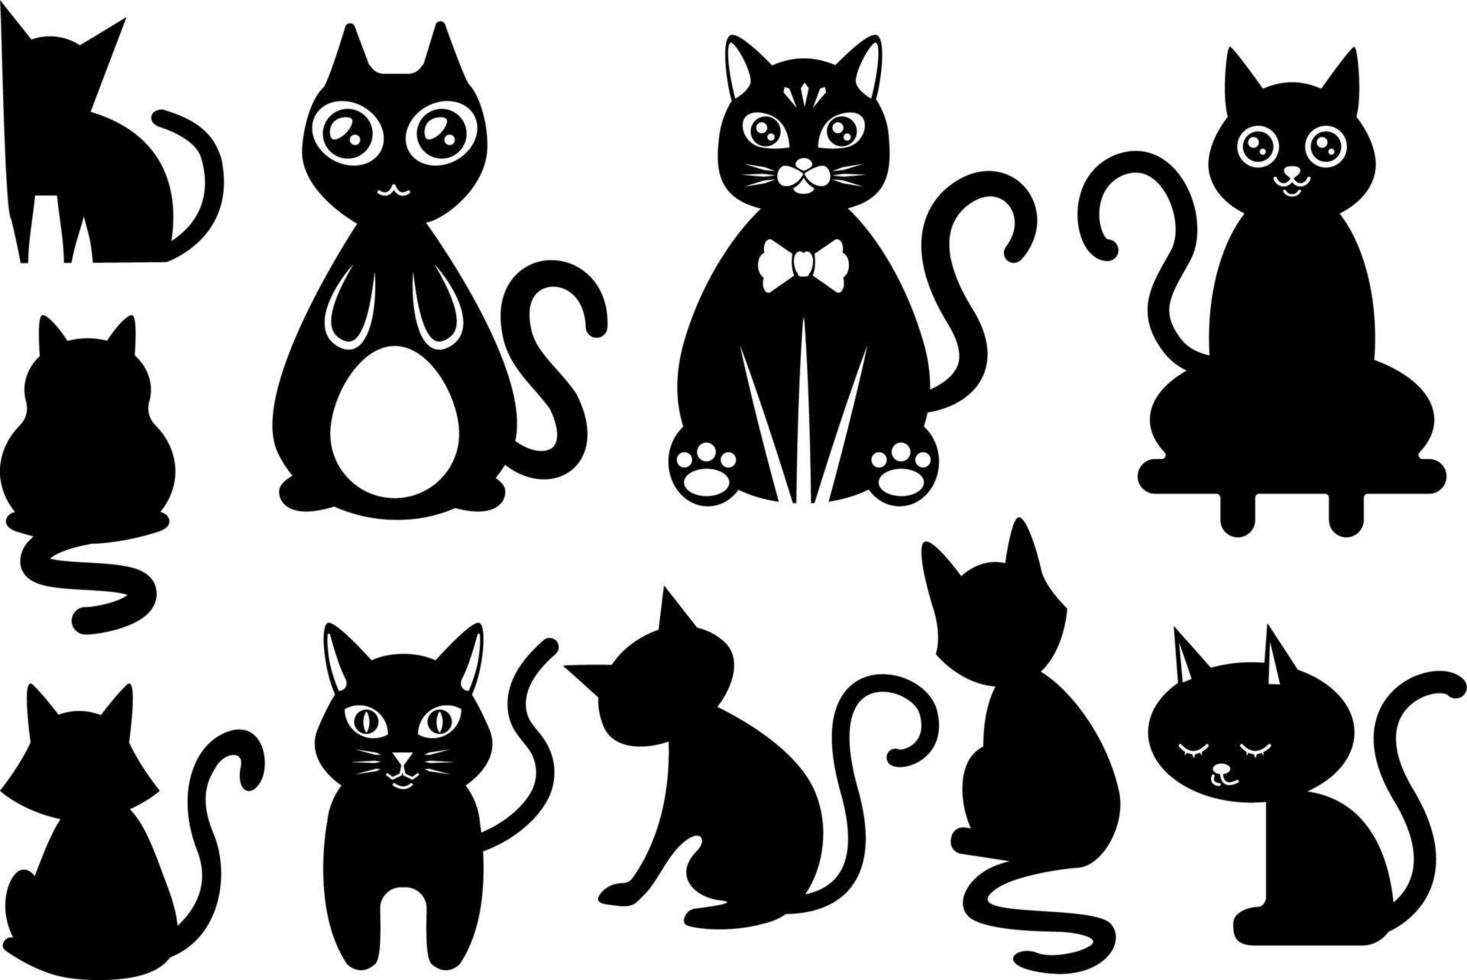 conjunto de gato preto e branco dos desenhos animados. coleção de gatos  fofos em estilo diferente, animais adoráveis para seus projetos de design.  11772043 Vetor no Vecteezy